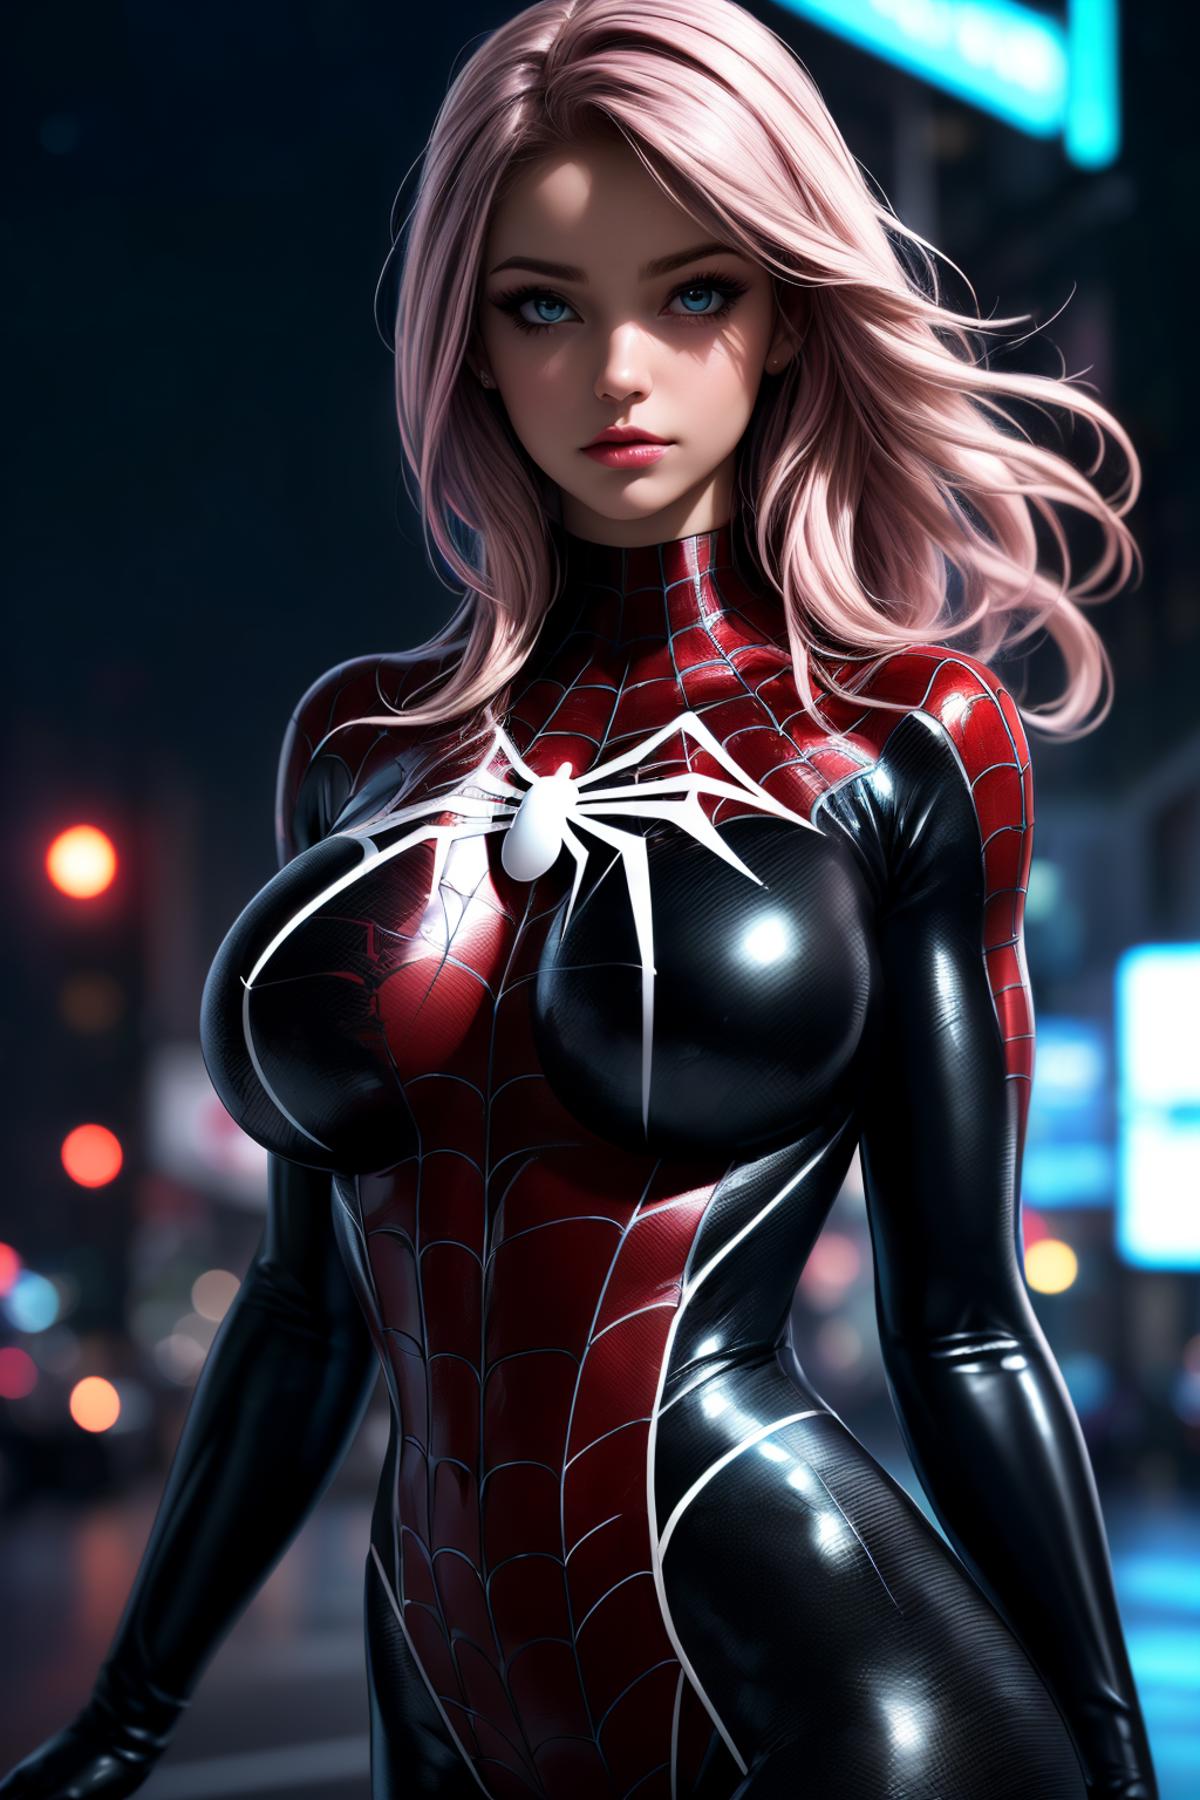 绪儿-蜘蛛侠服装Spider-man costume image by iJWiTGS8